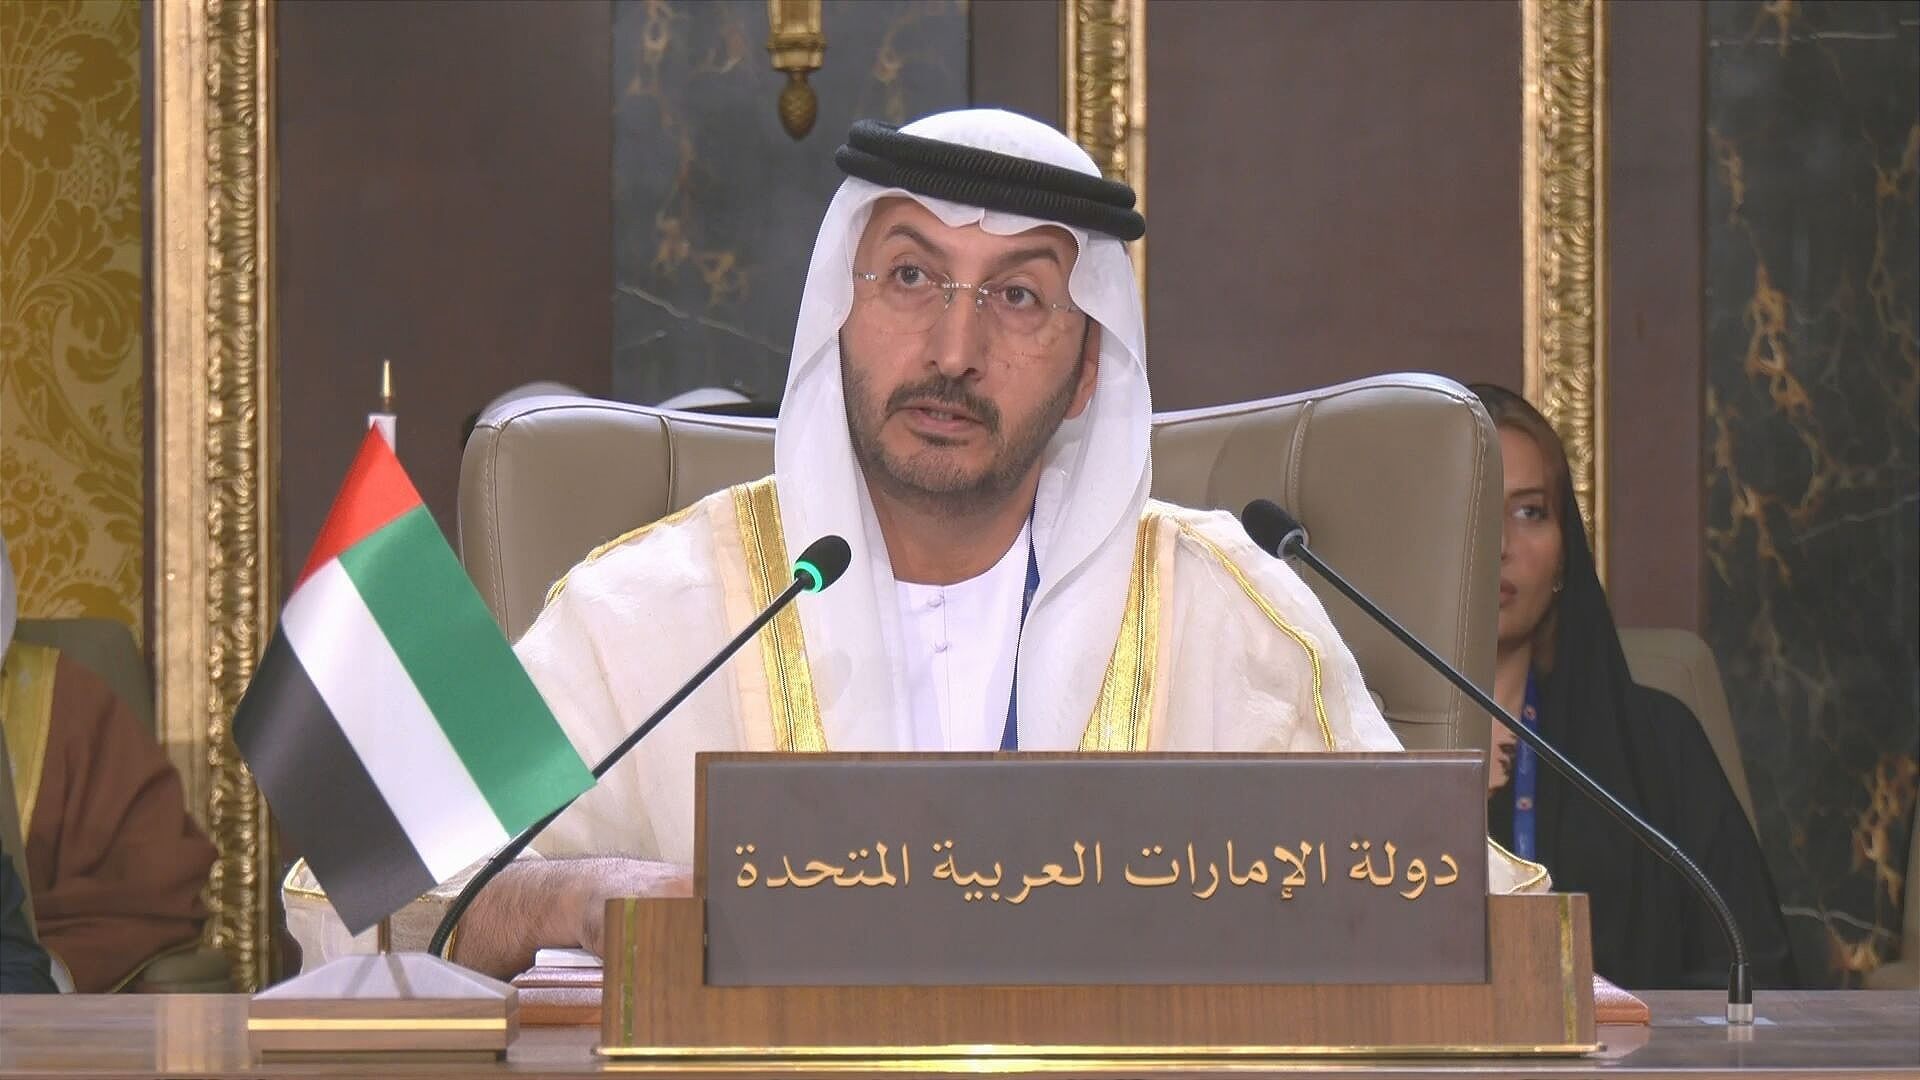 الإمارات تؤكد خلال اجتماع المجلس الاقتصادي العربي حرصها على تعزيز العمل المشترك في المجالات التنموية